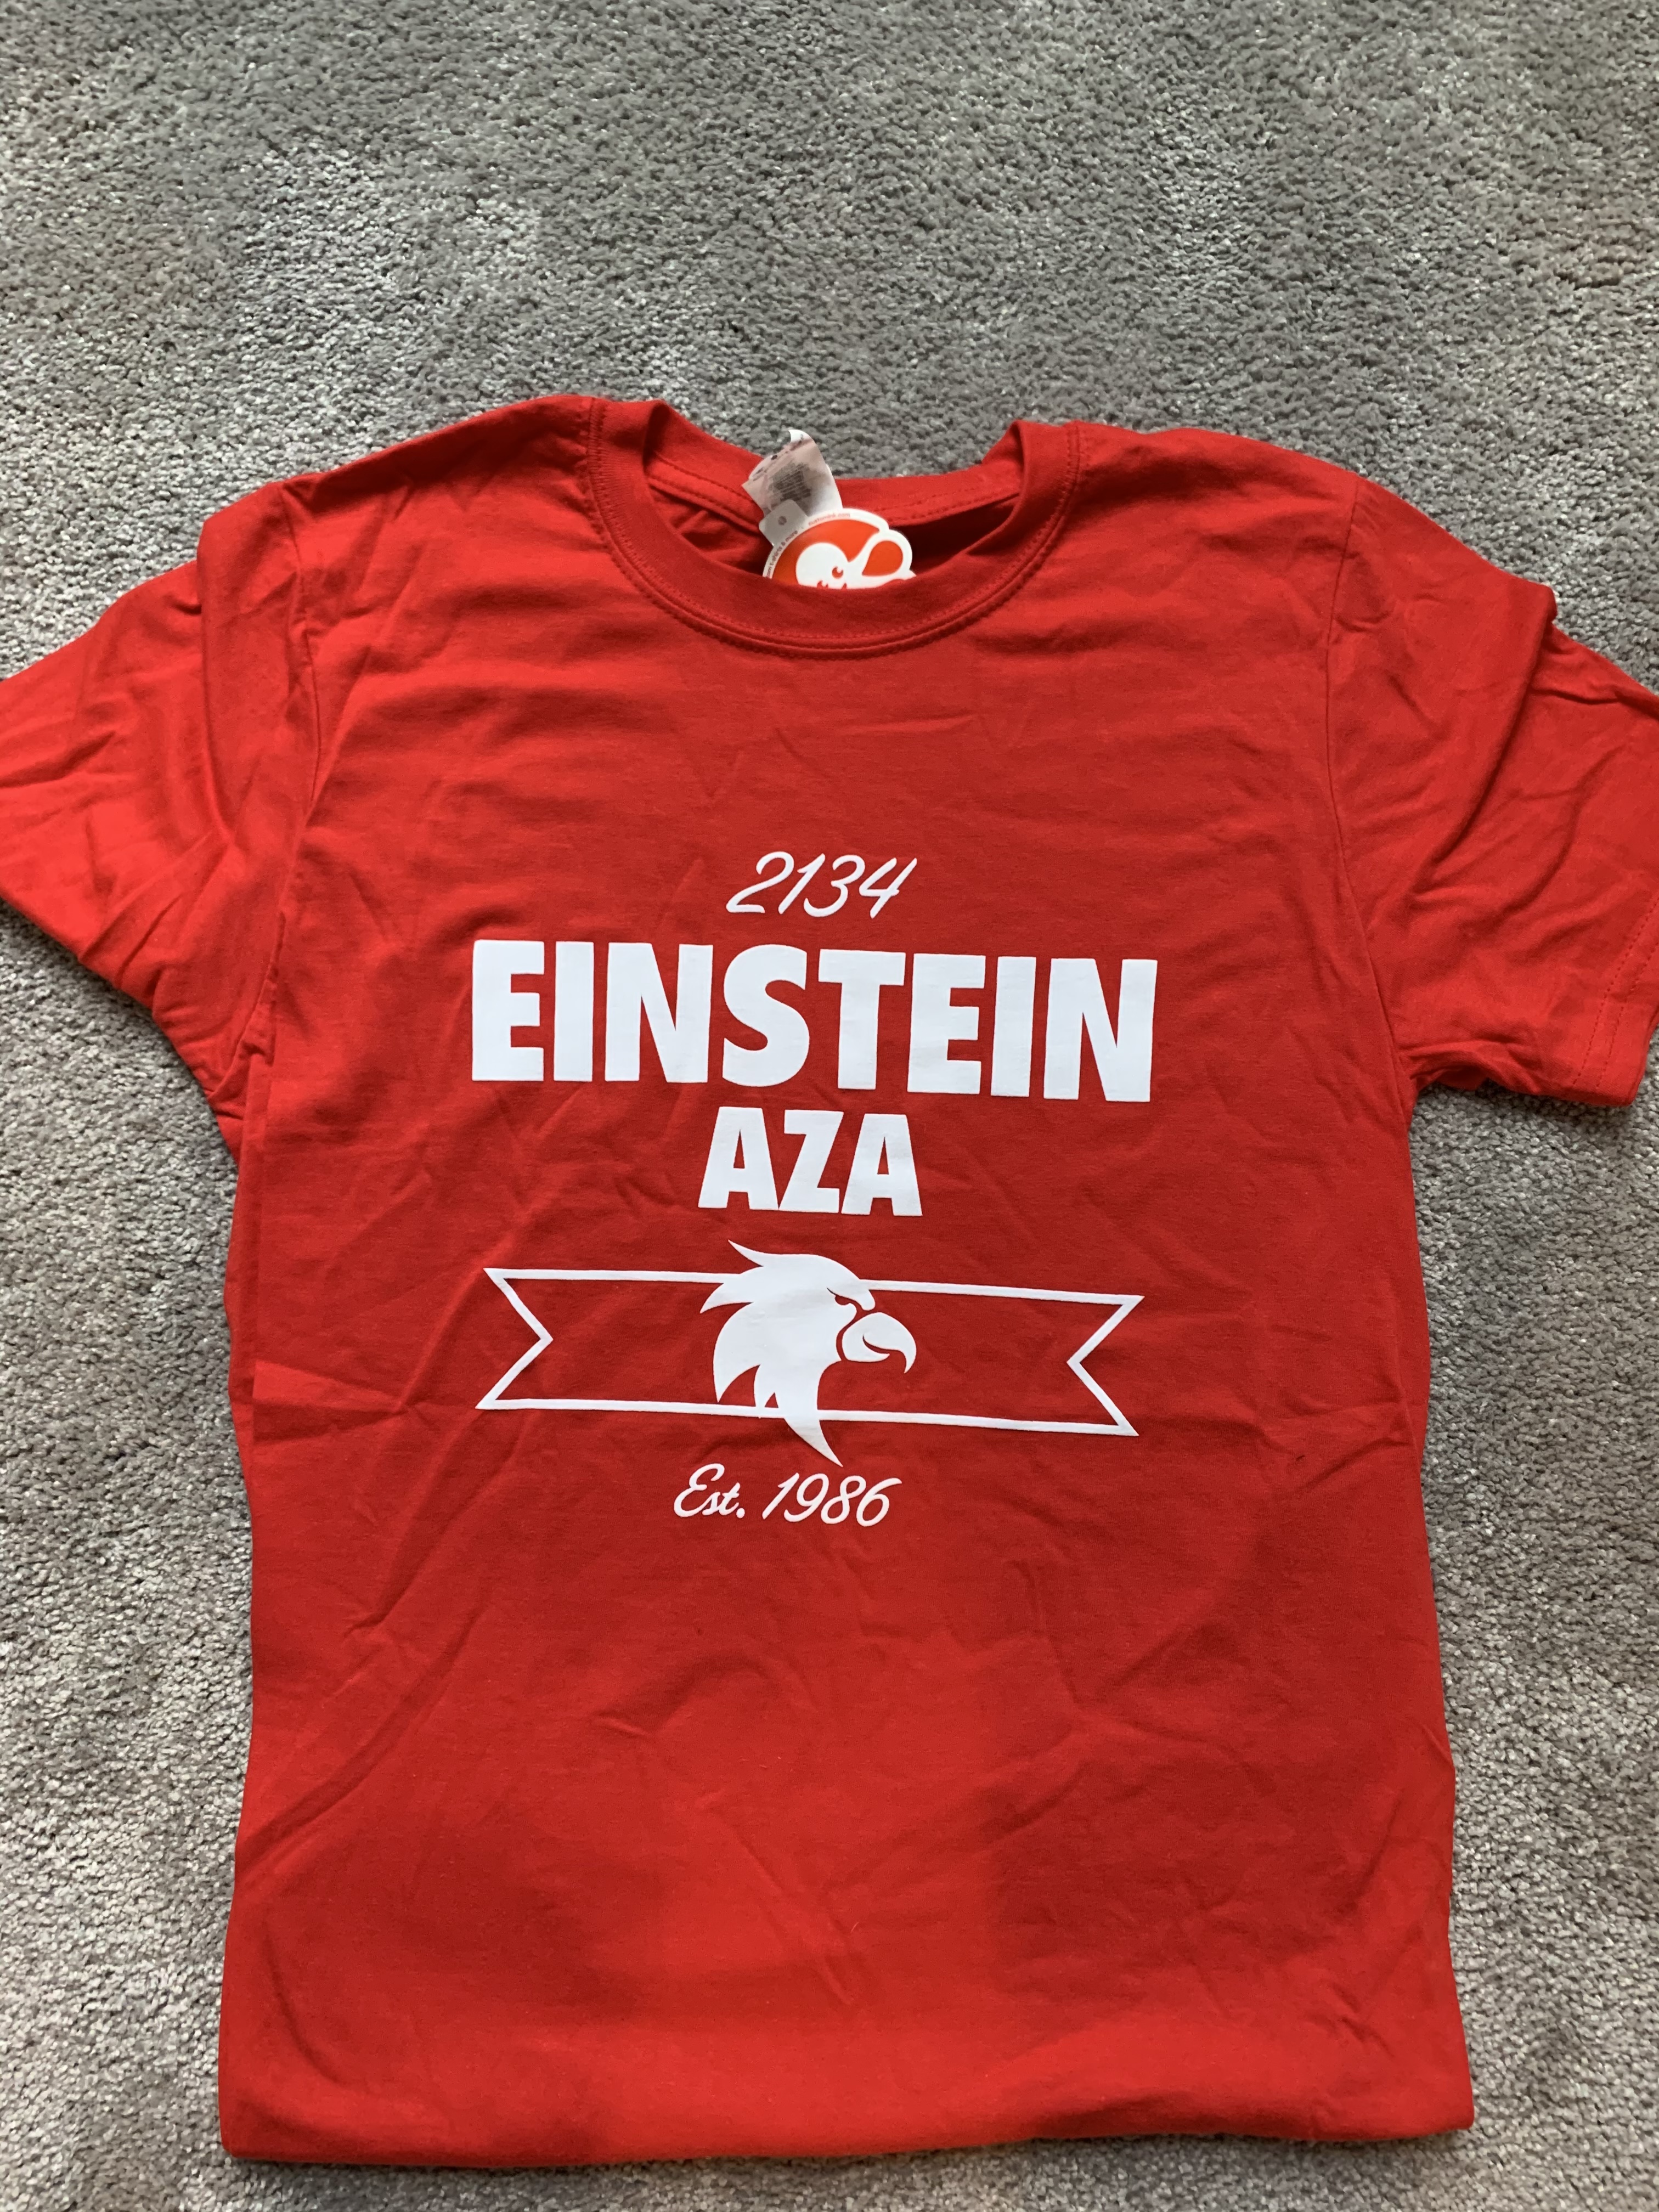 Einstein AZA T-Shirt image